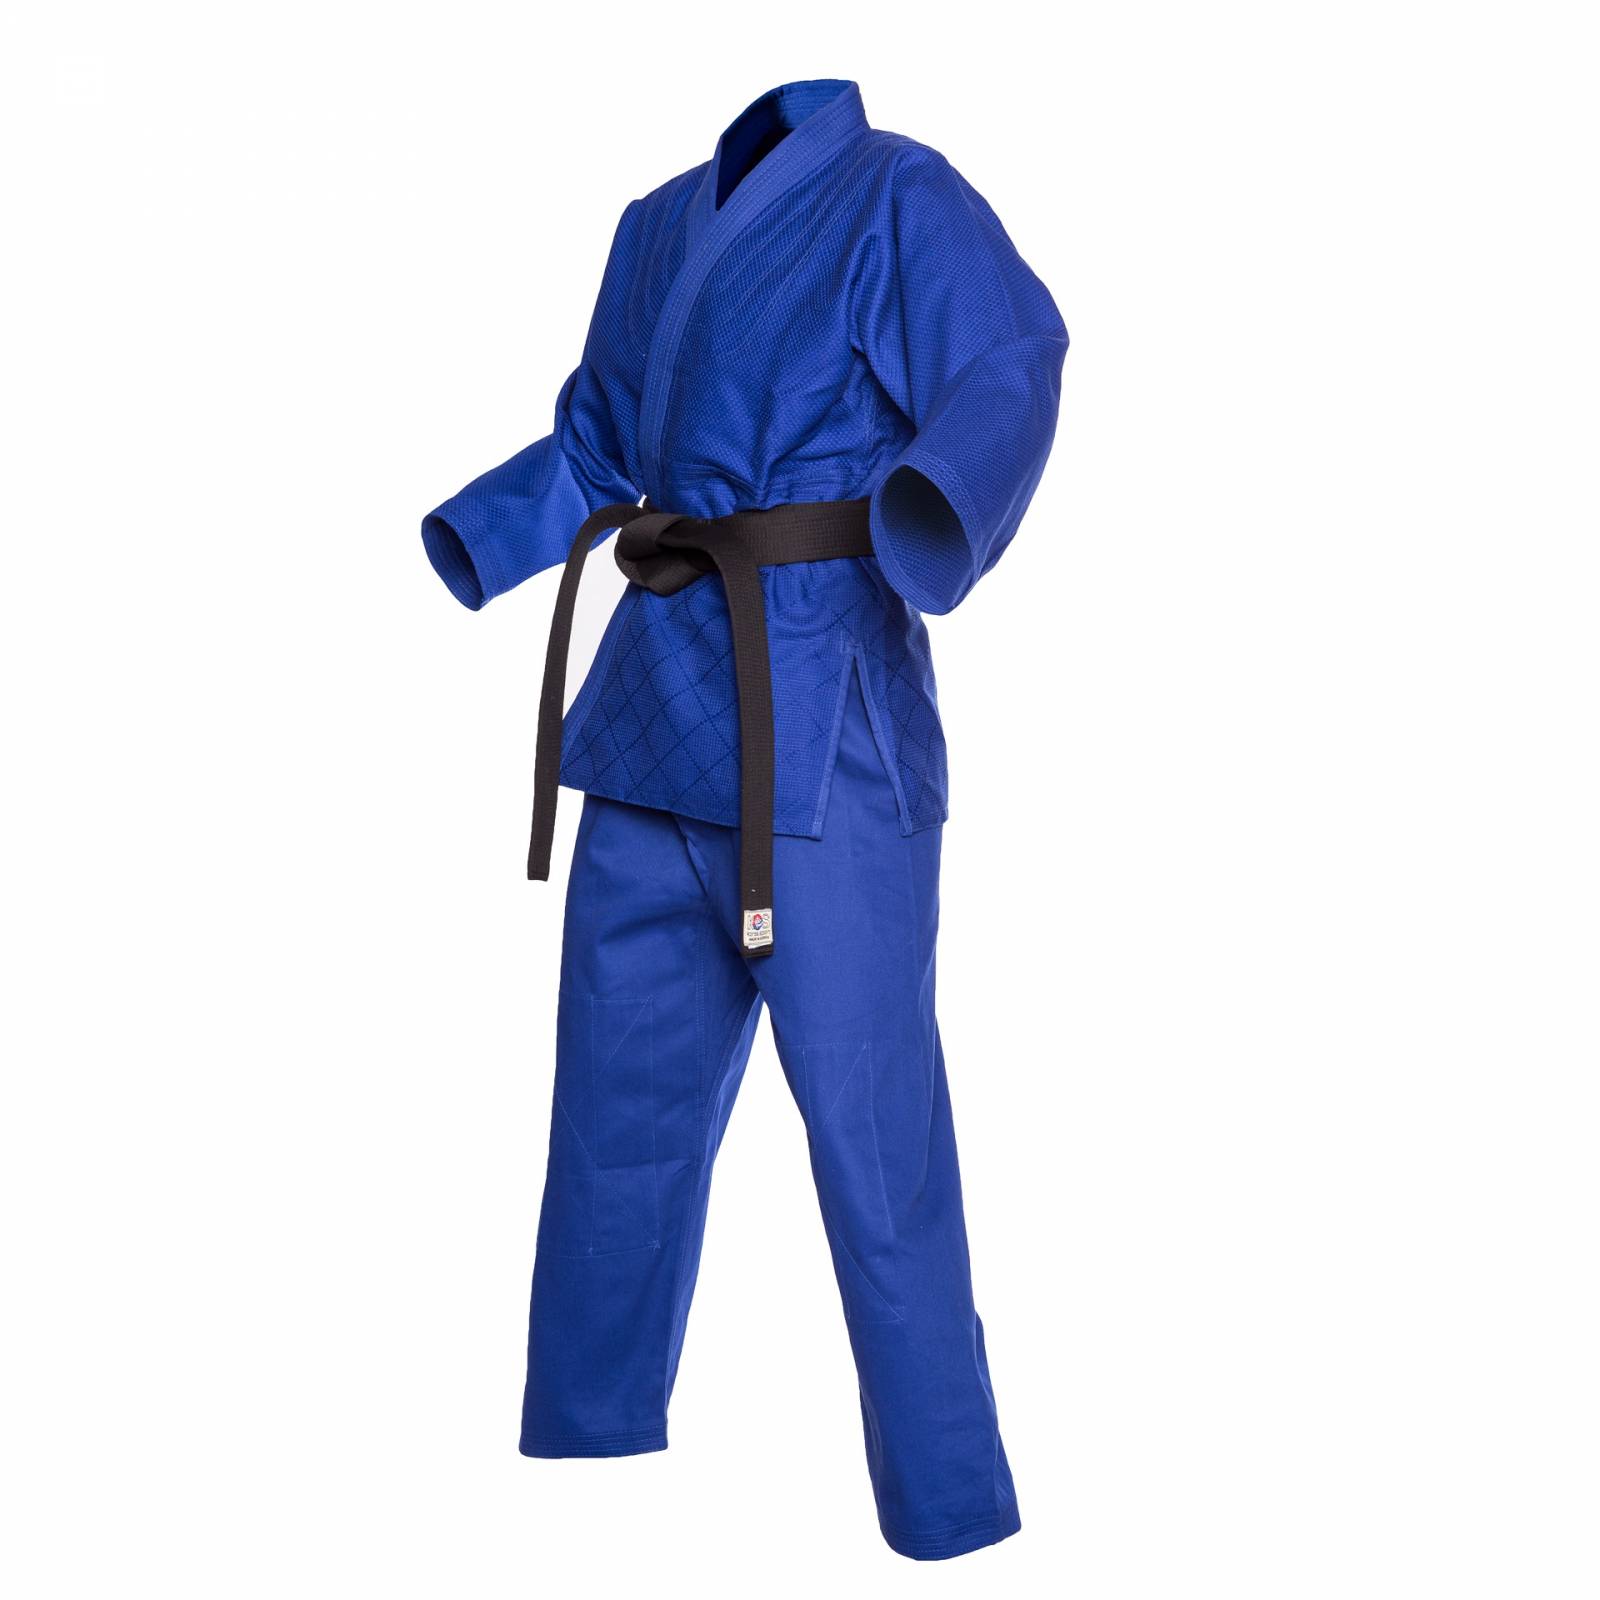 Korea Sport Judogui Color Azul Rey